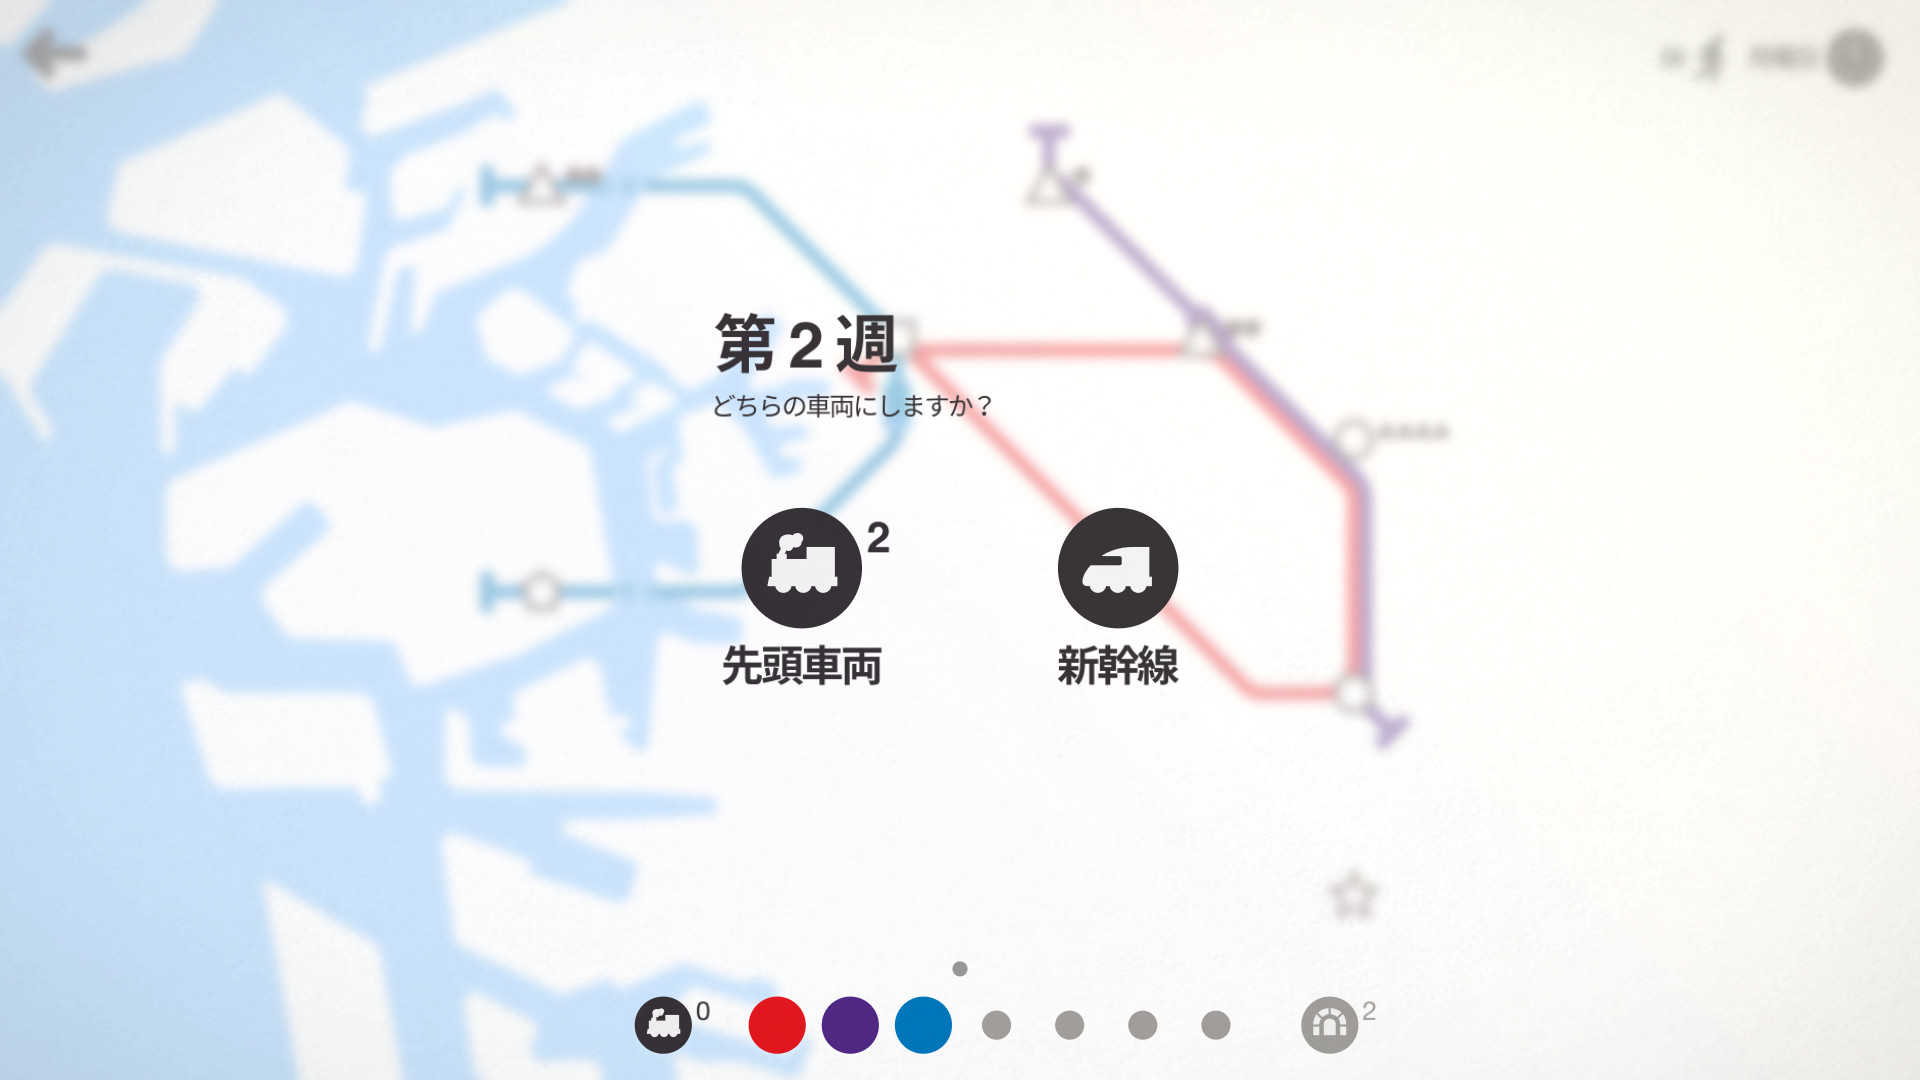 Mini Metro - screenshot 2